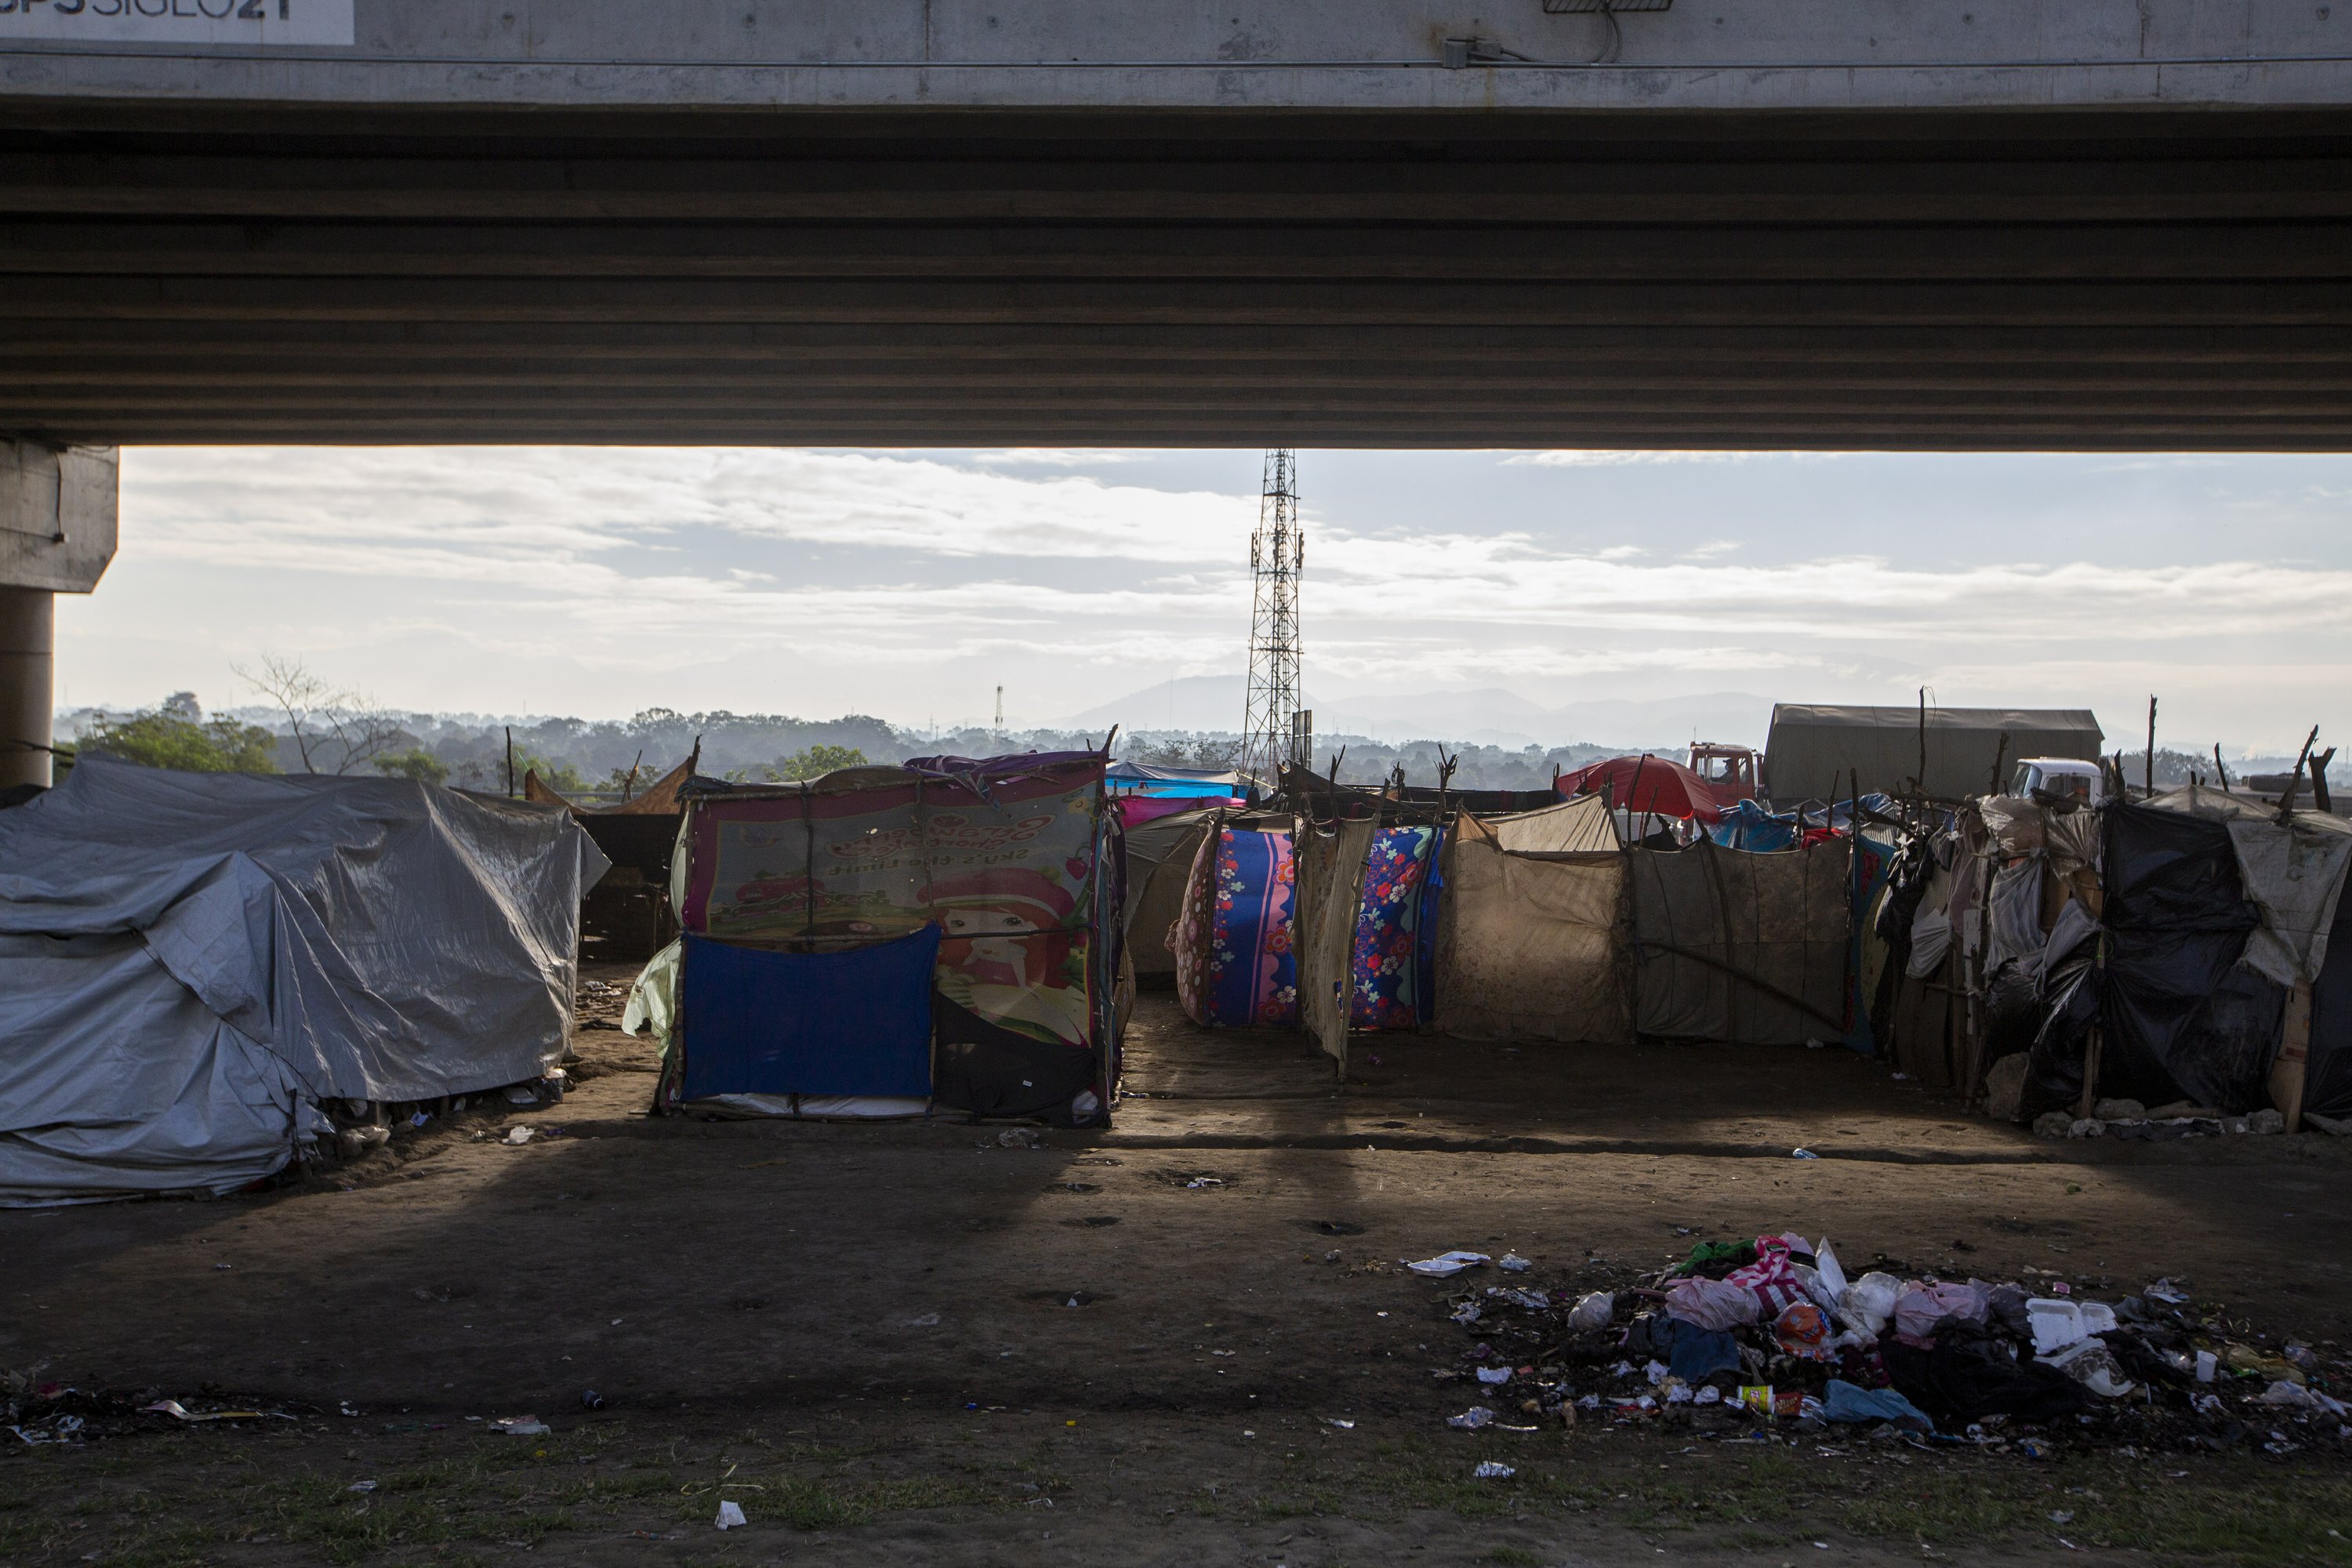 Despair grows in devastated Honduras, fueling migration